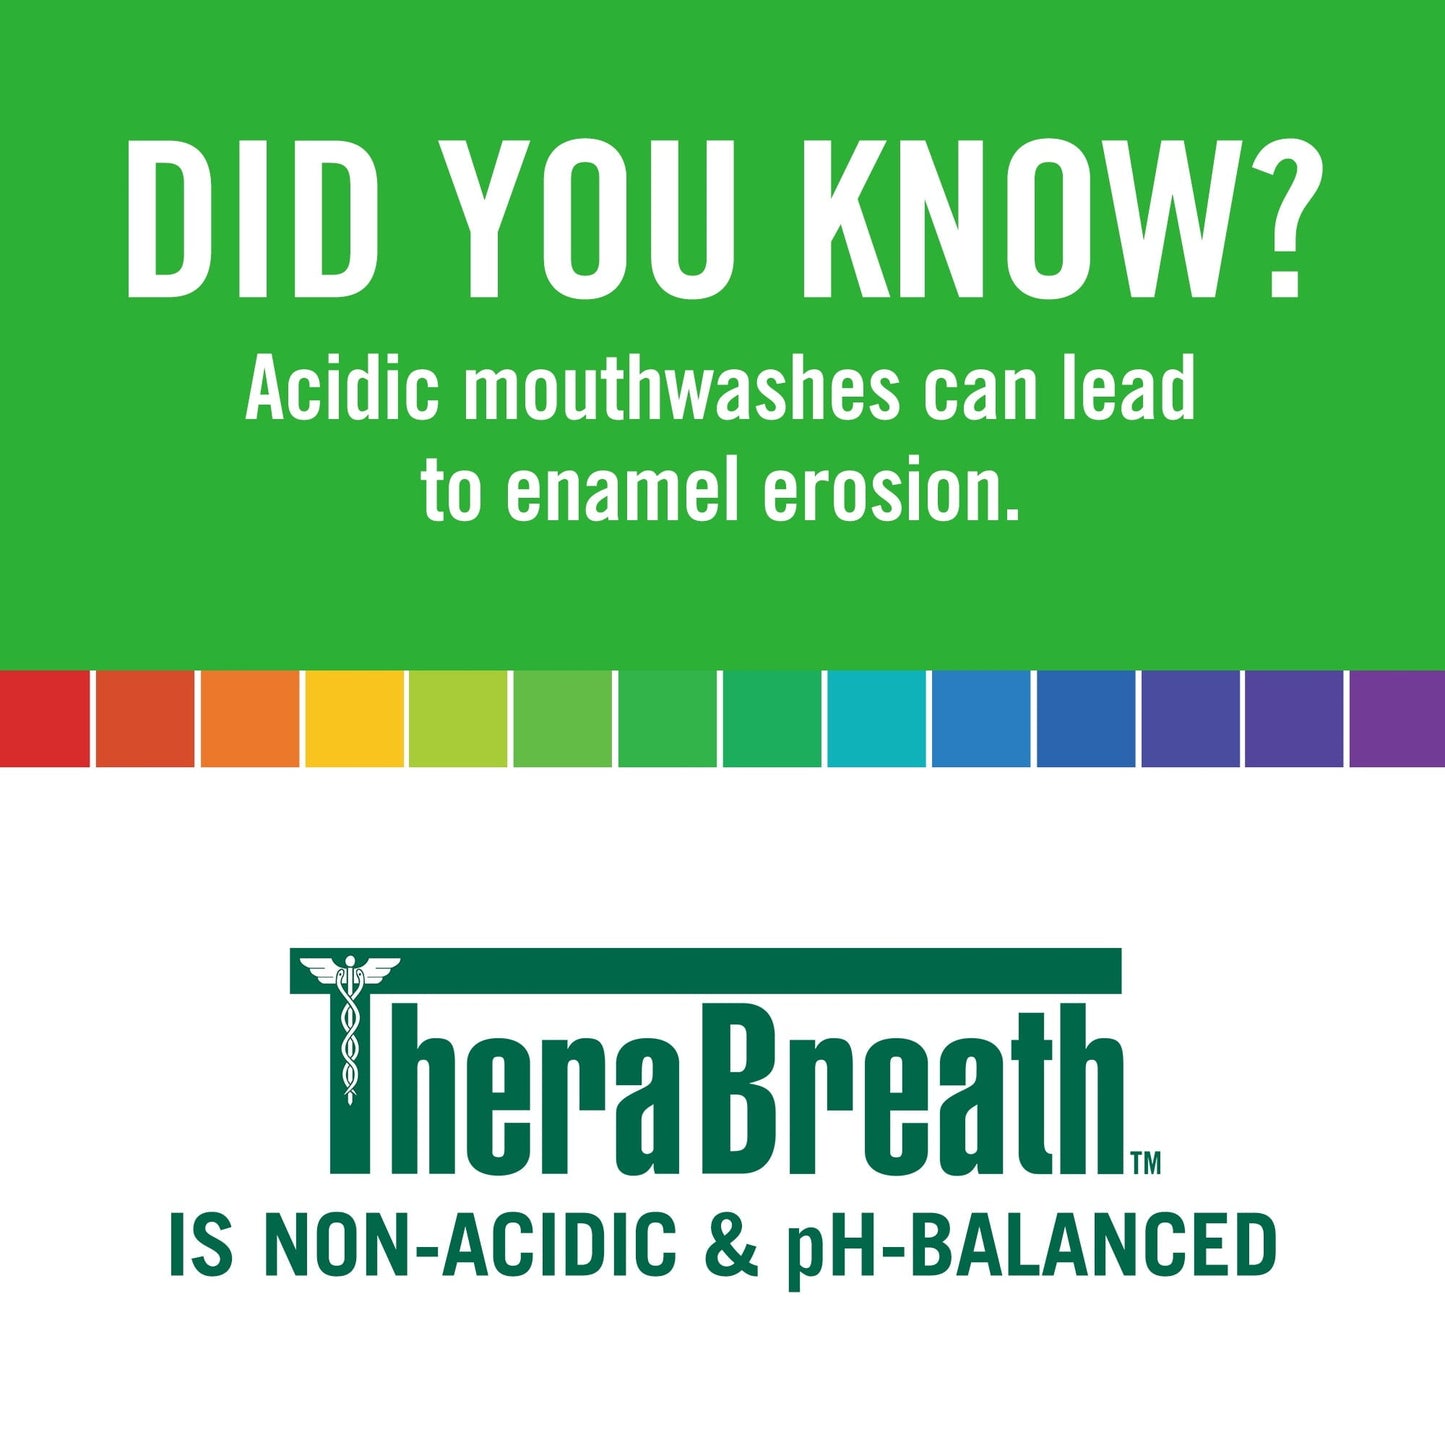 TheraBreath Fresh Breath Mouthwash, Mild Mint, Alcohol-Free, 16 fl oz